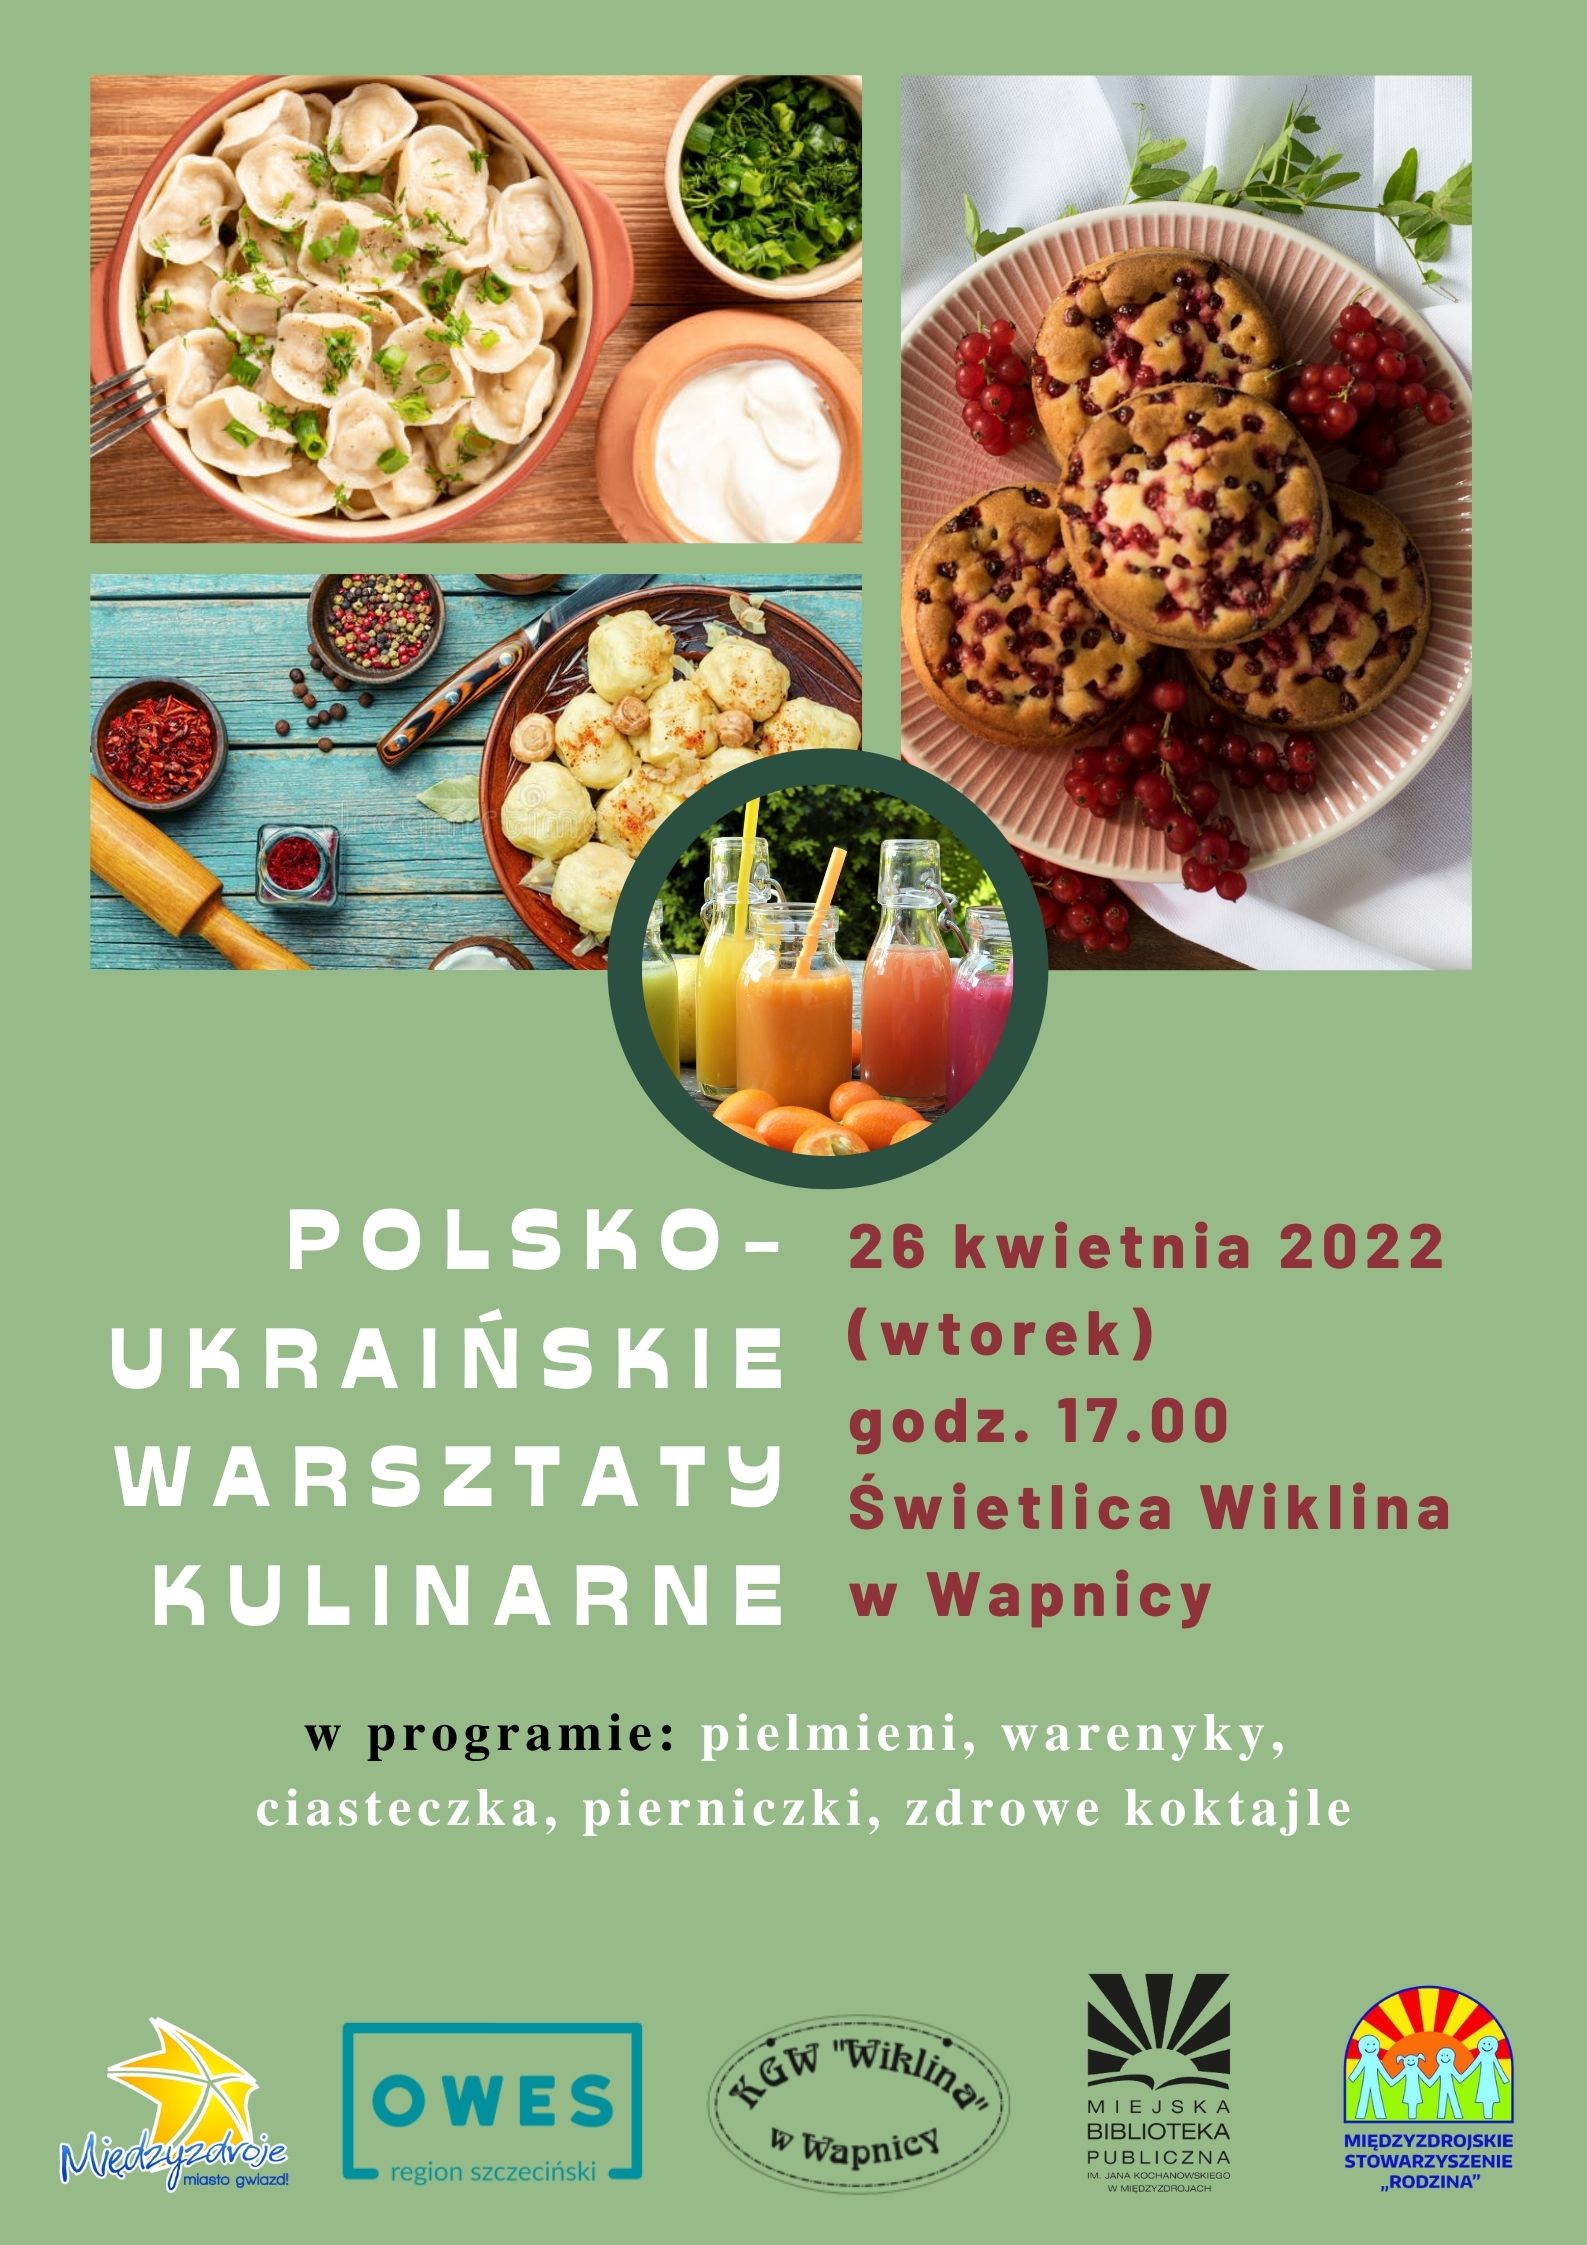 Polsko-ukraińskie warsztaty kulinarne - 26 kwietnia 2022 r.